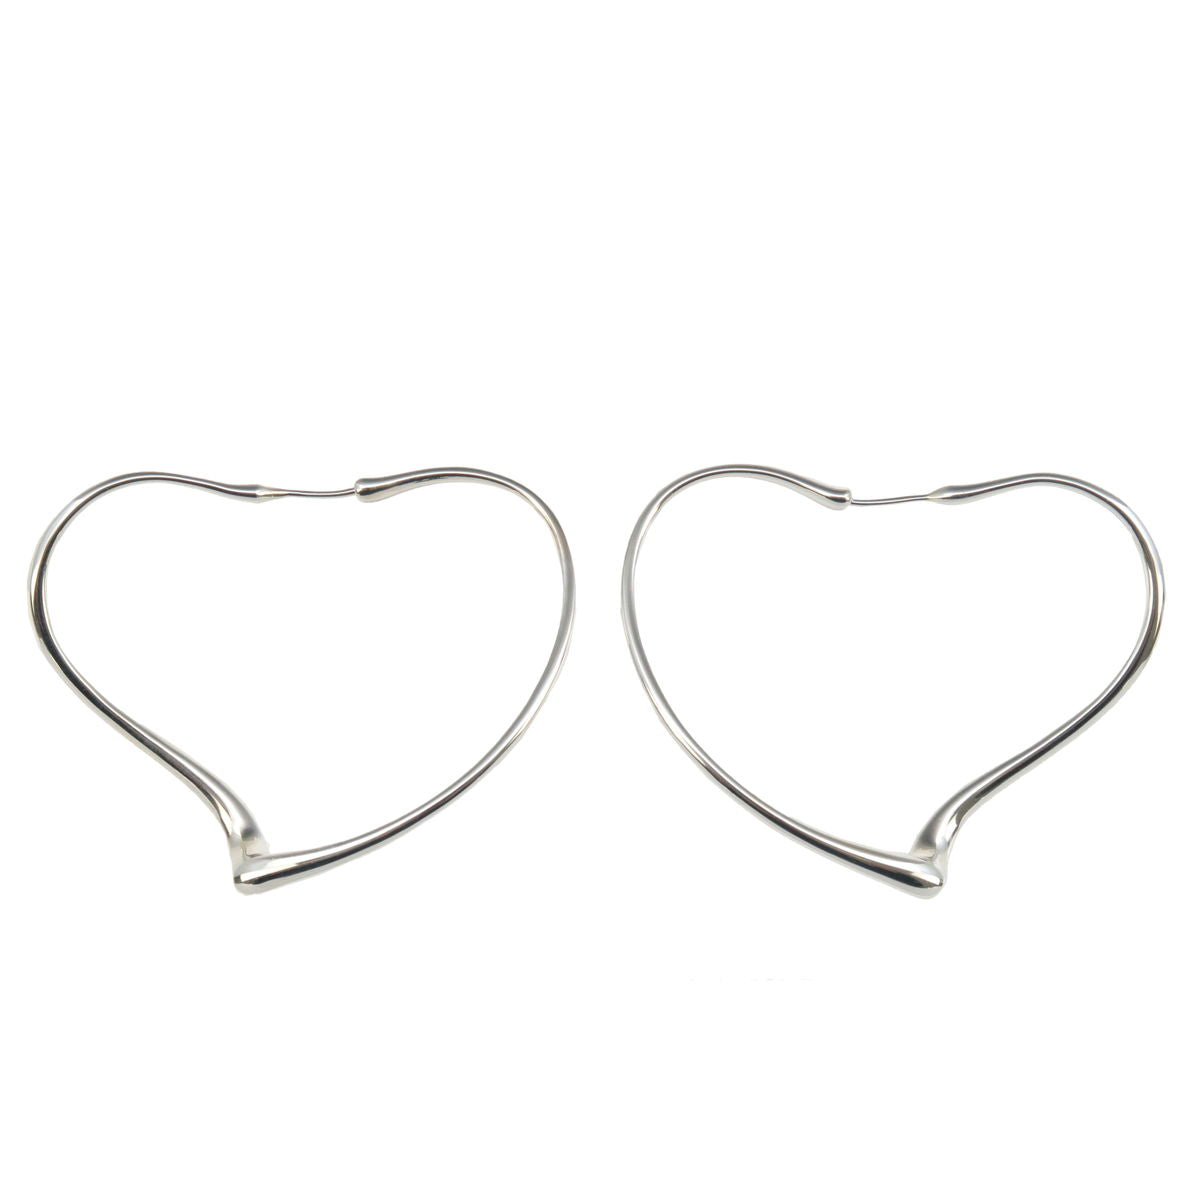 Tiffany&Co. Tiffany Open Heart Hoop Earring Medium SV925 Silver